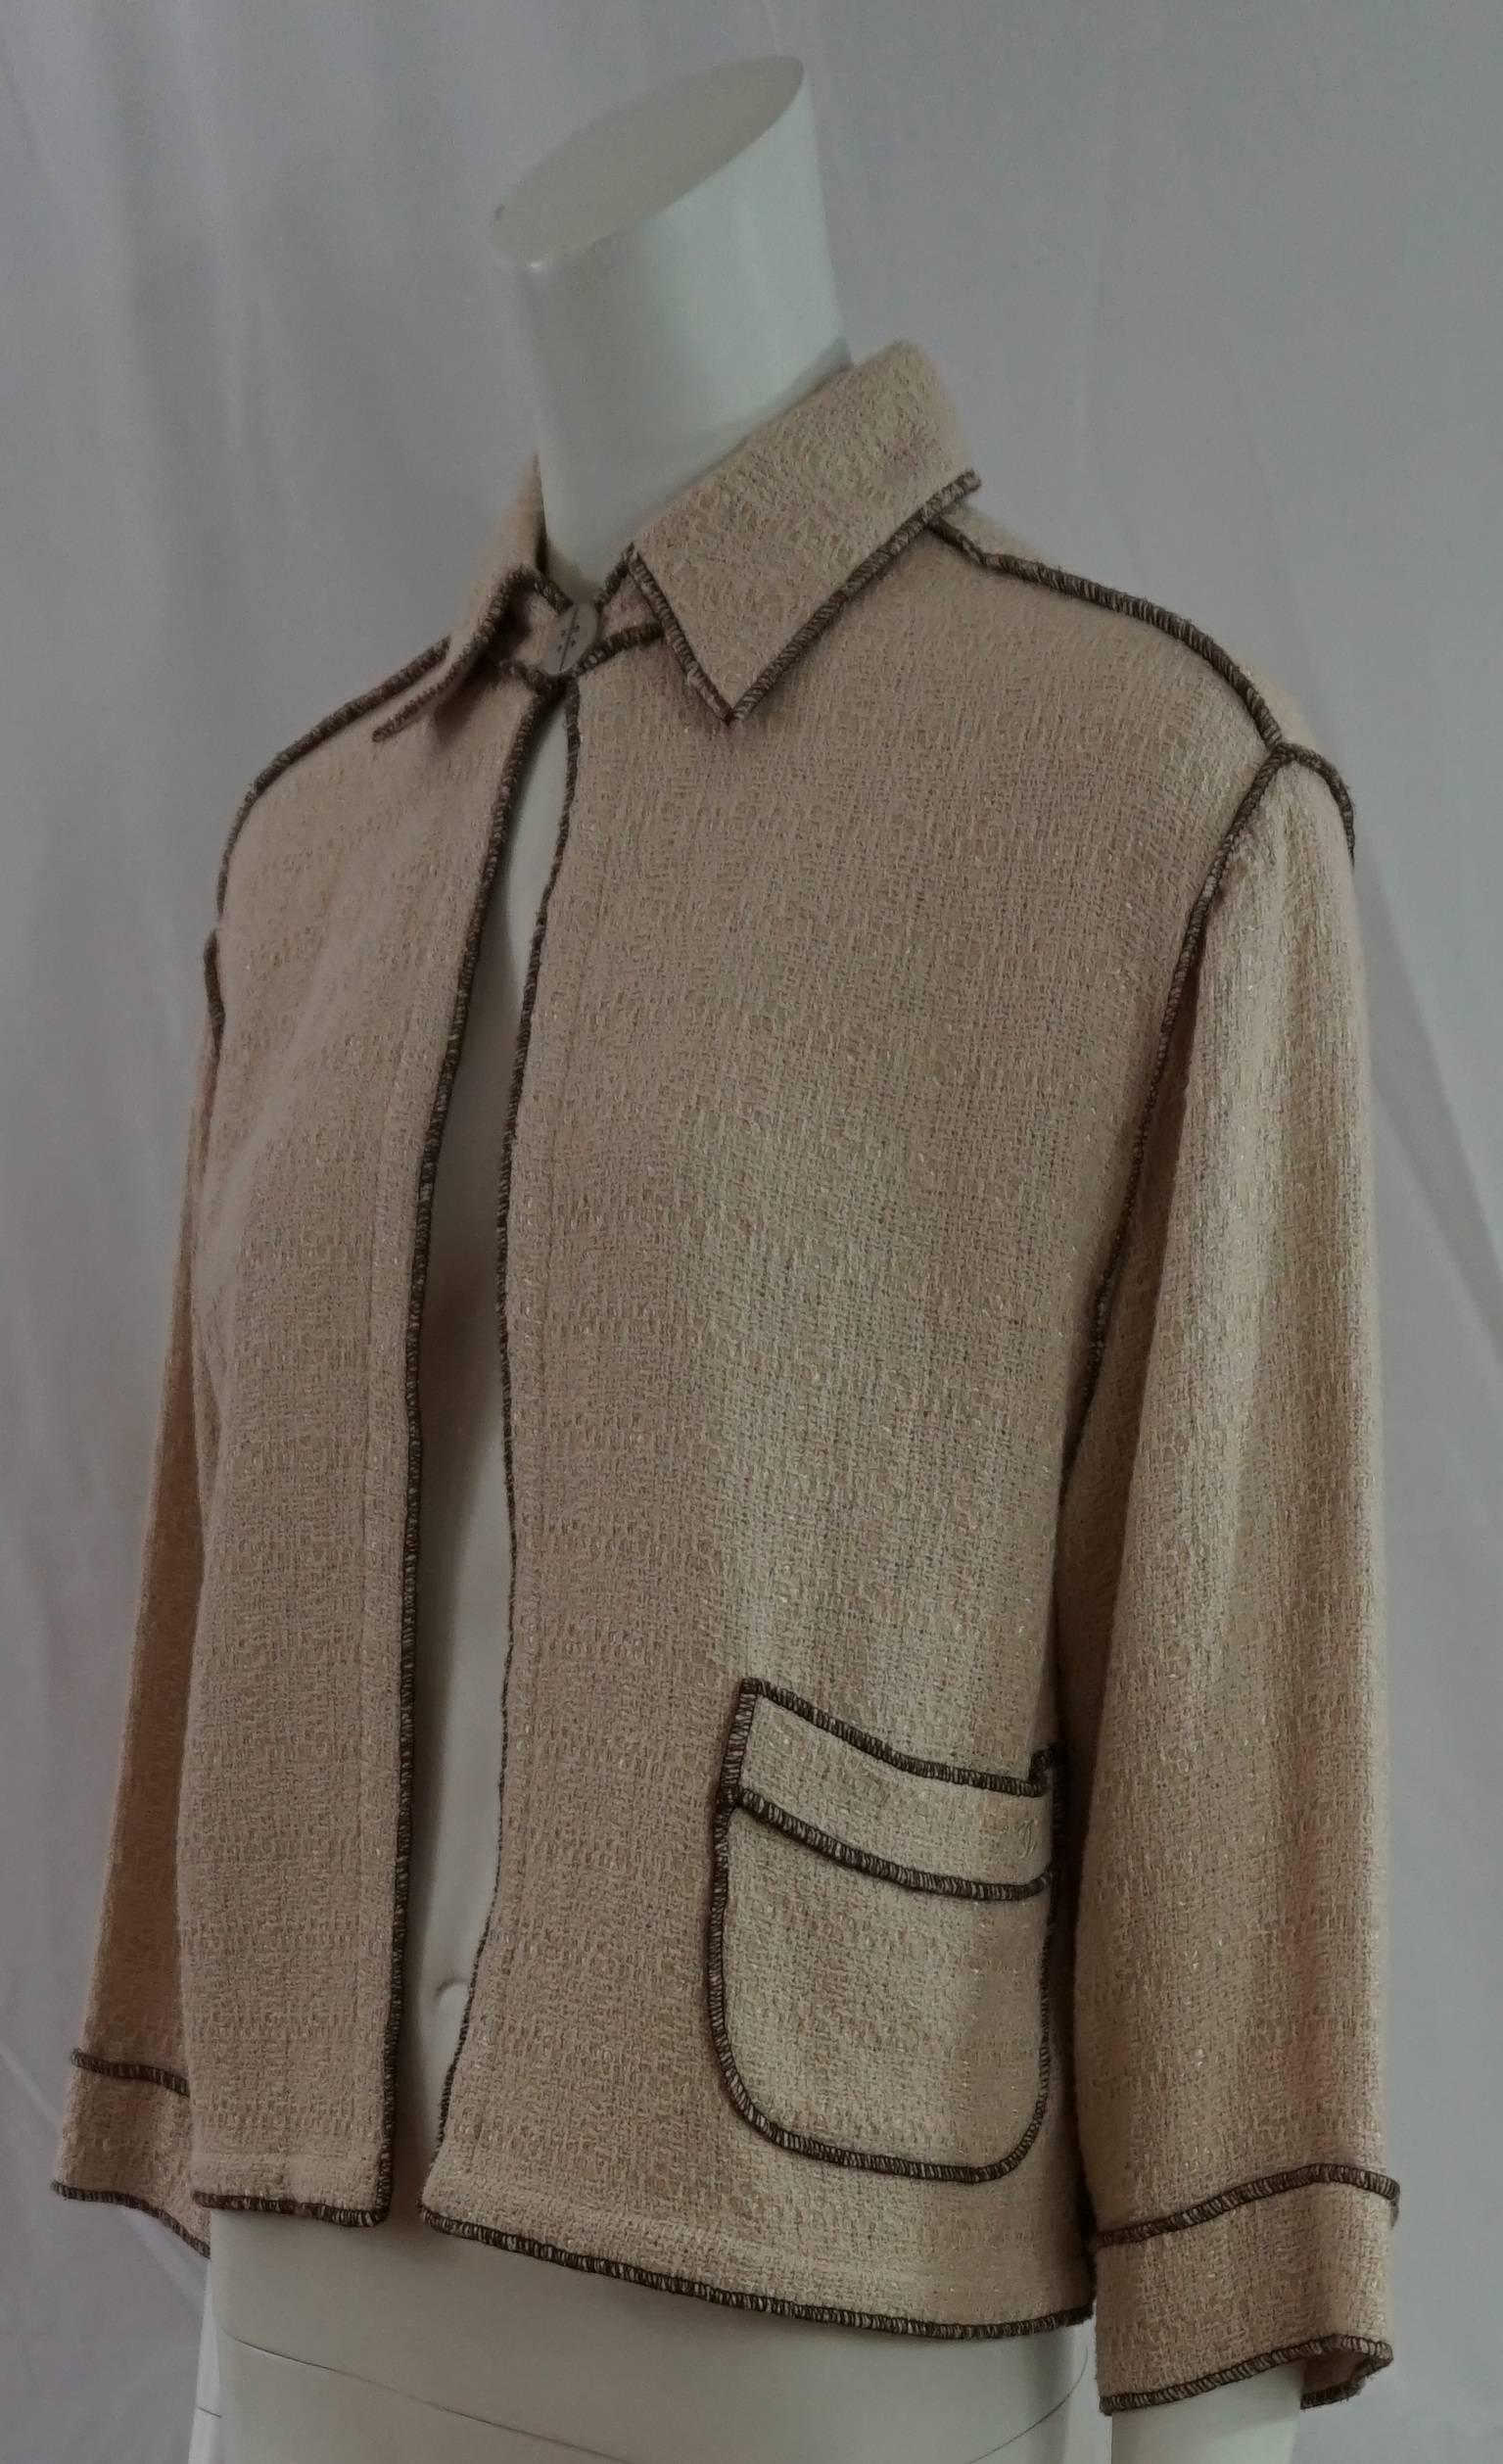 Chanel Runway Collection Spring 1999 Veste en tricot de coton avoine avec surpiqûres marron - Taille 38. Cette magnifique veste légère en tricot de coton mélangé oatmeal/beige de style boîte/semi-culotte a une manche 3/4 et une épaule tombante. Il